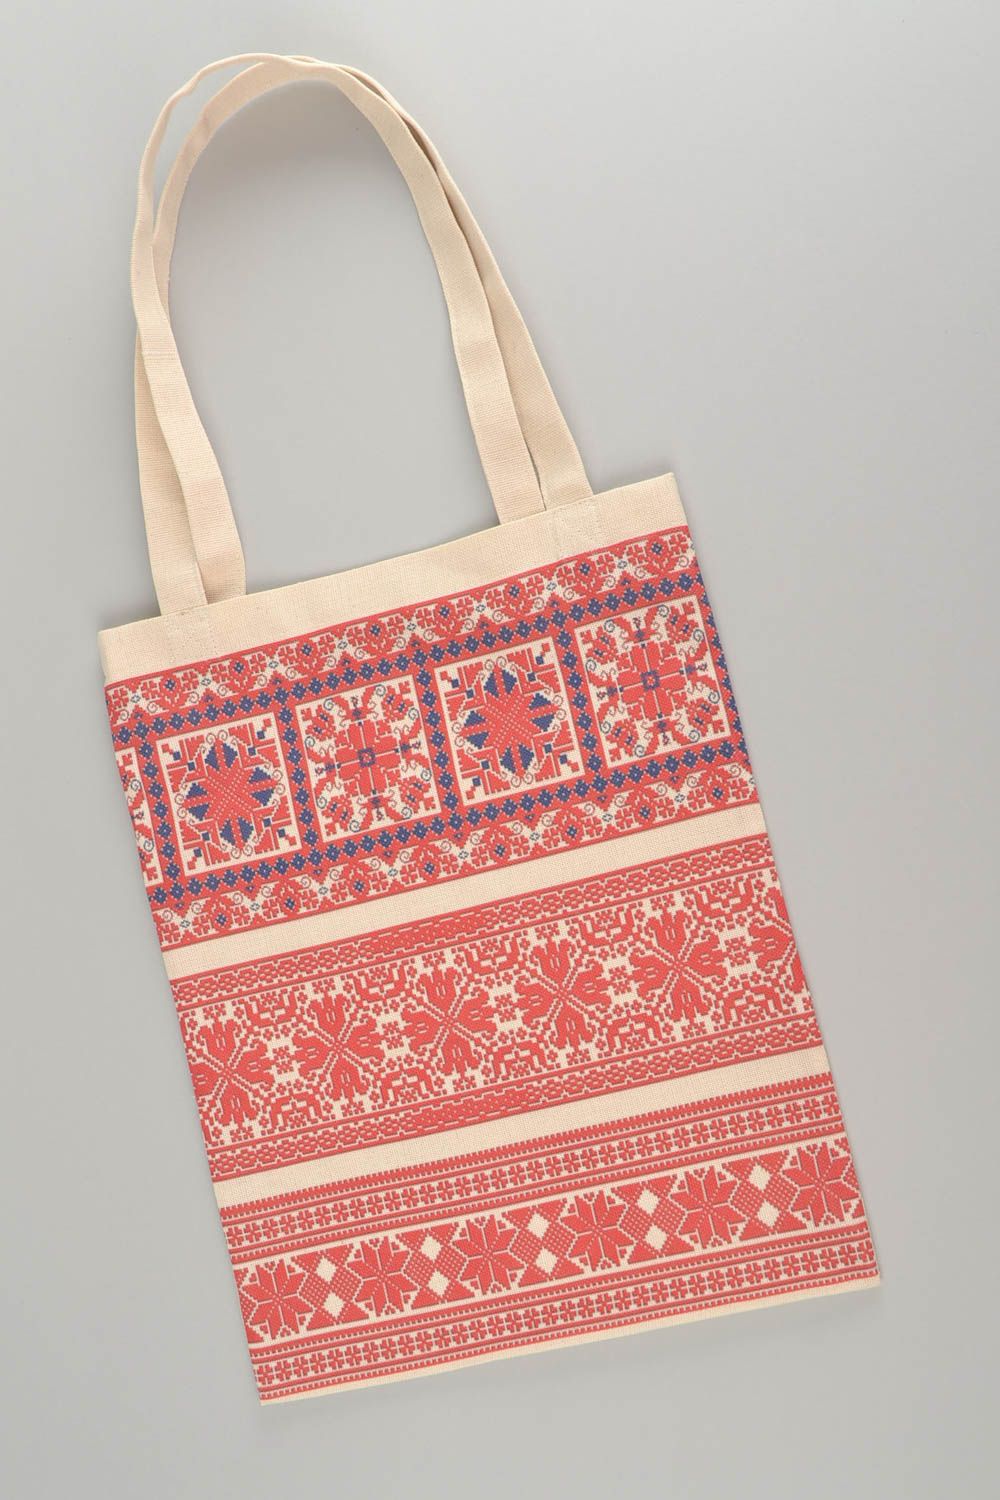 Женская сумка из ткани в эко-стиле большая с этническим рисунком ручной работы фото 3